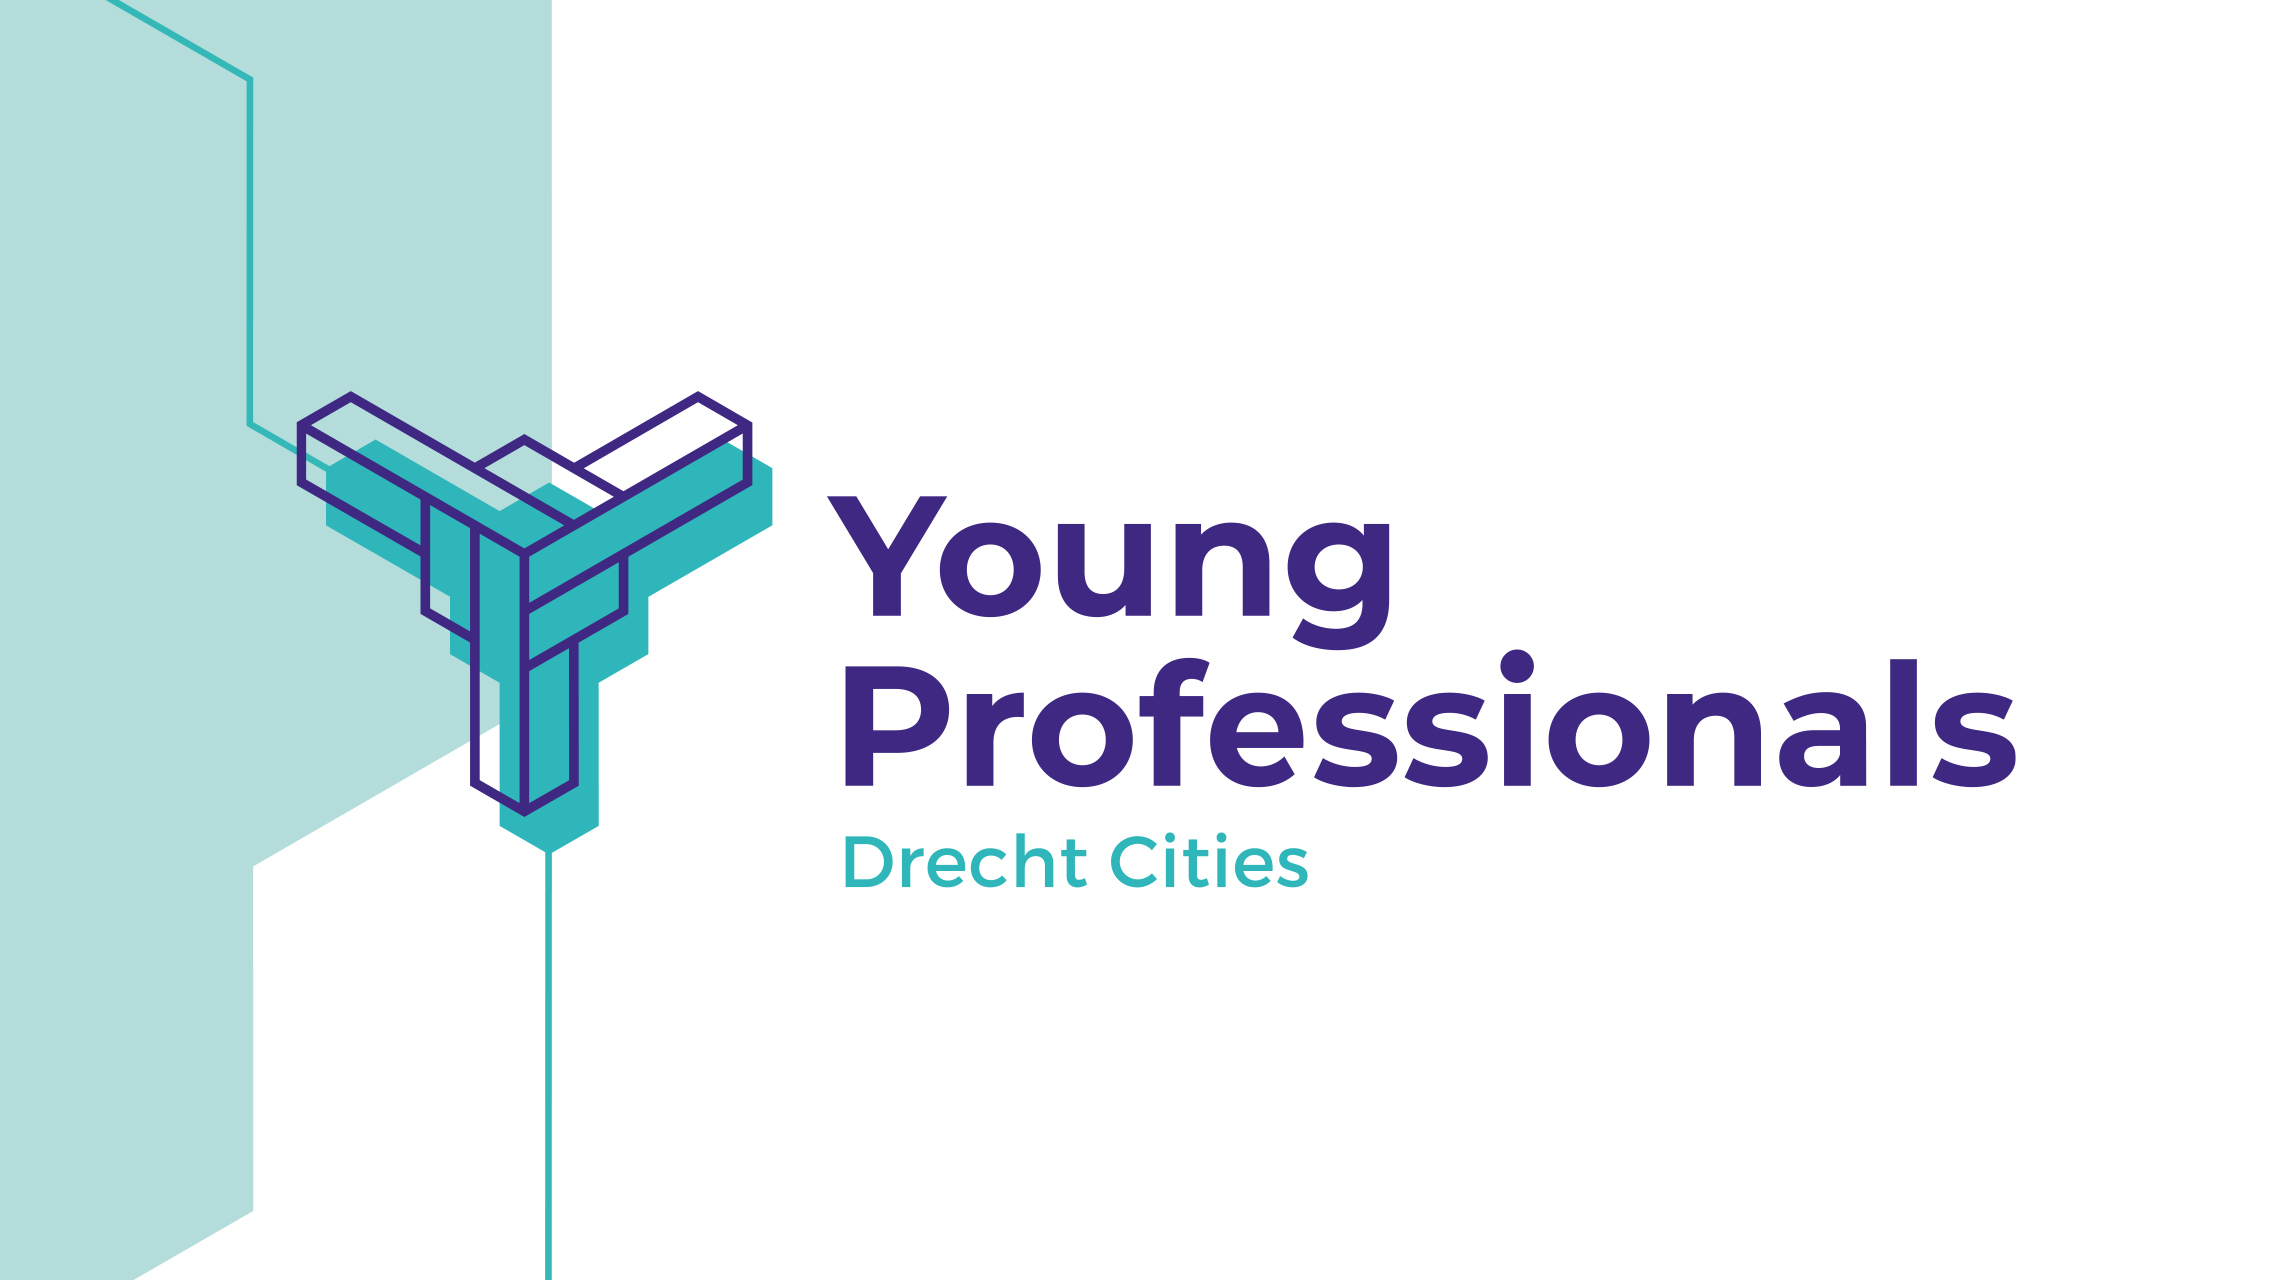 Drecht Cities Young Professionals